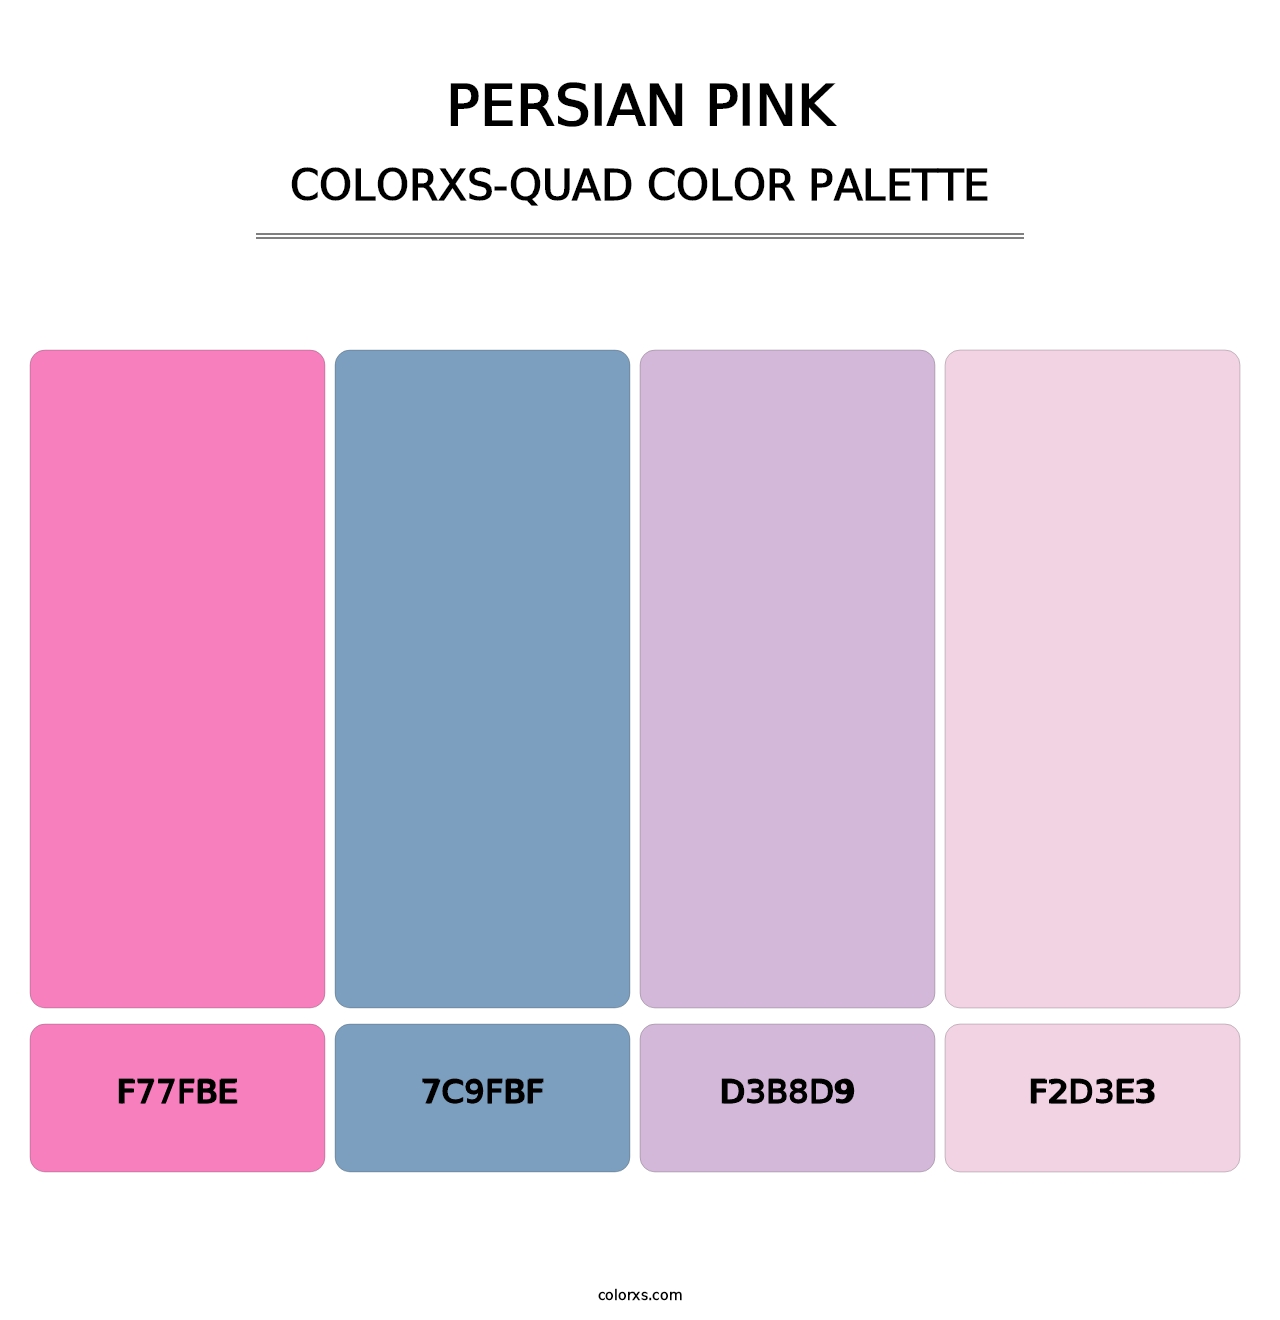 Persian Pink - Colorxs Quad Palette